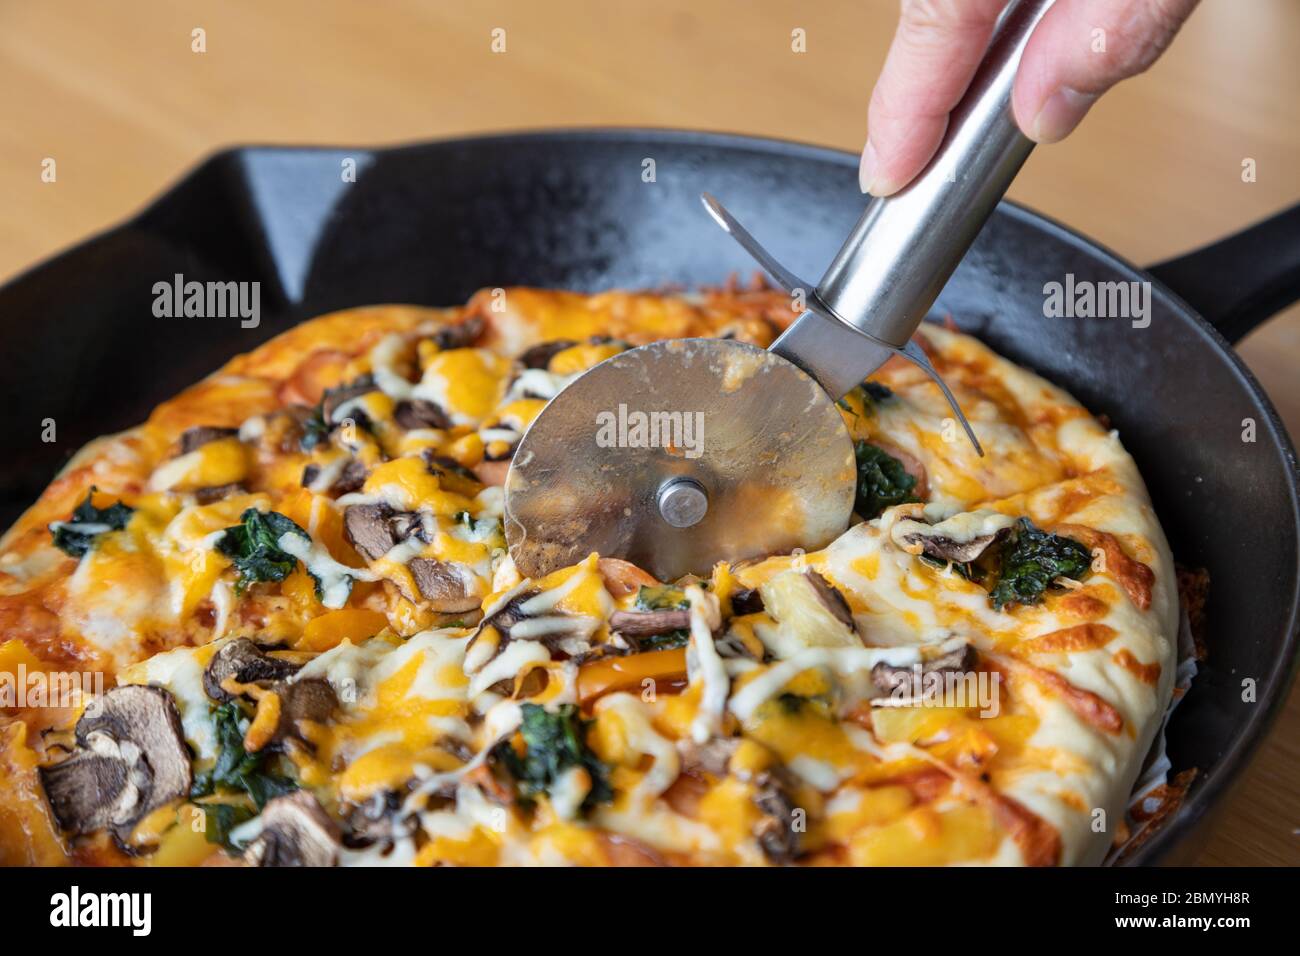 Taglierina per pizza affettare pizza vegetariana fatta in casa con funghi, spinaci; cipolla; formaggio; peperone; e varietà di condimenti vegetali e h aromatico Foto Stock